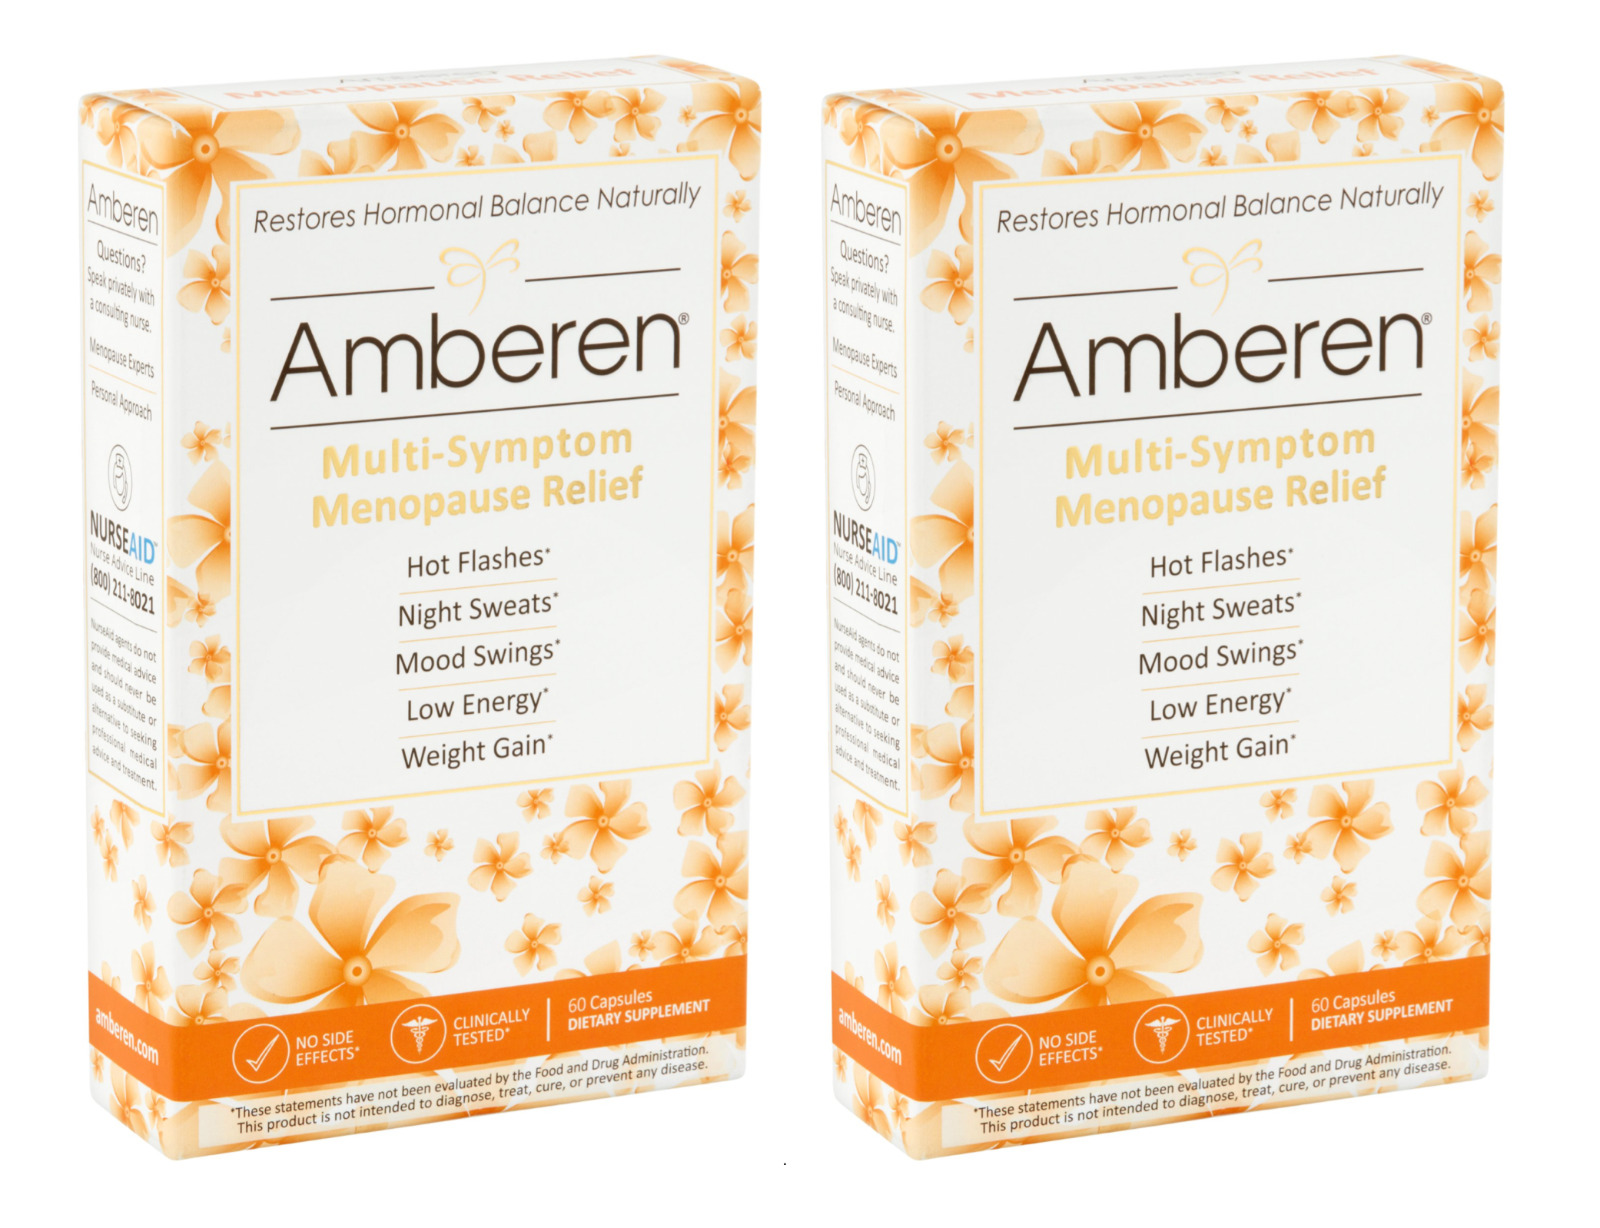 Amberen Restore hormonal balance Menopause relief - Thuốc tăng hóc môn hỗ trợ giảm những triệu chứng tiền mãn kinh